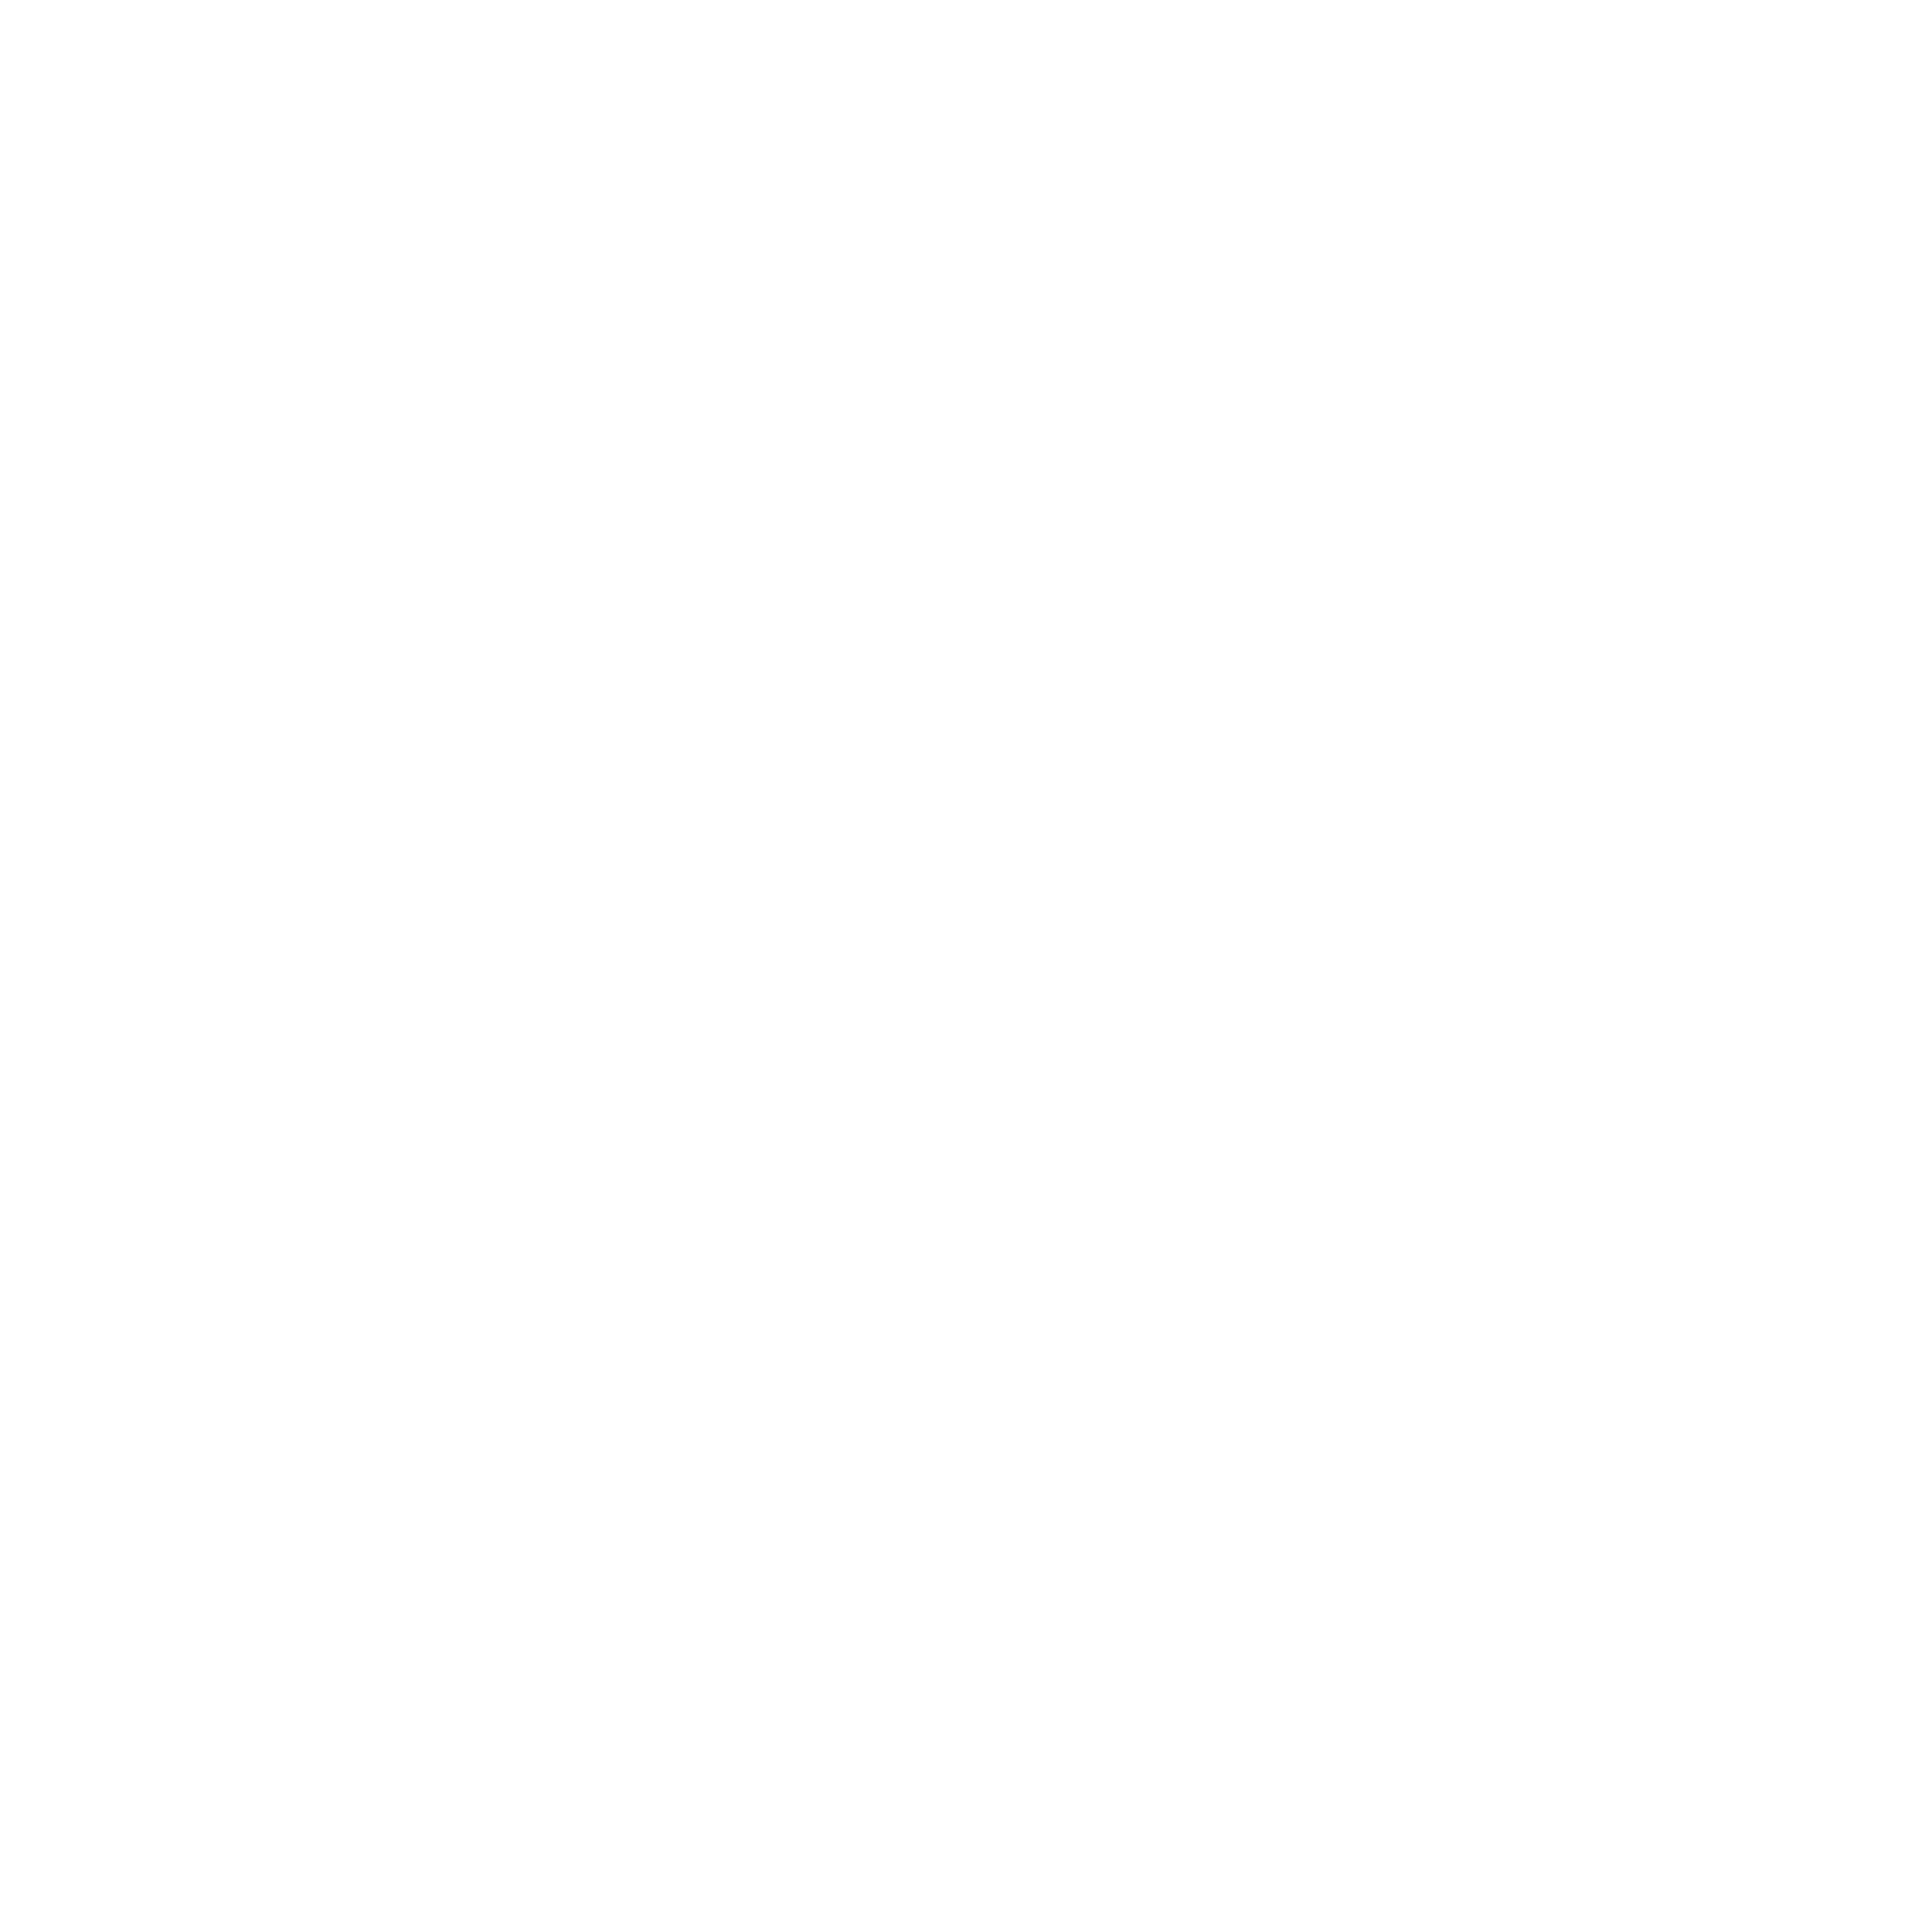 Melsys